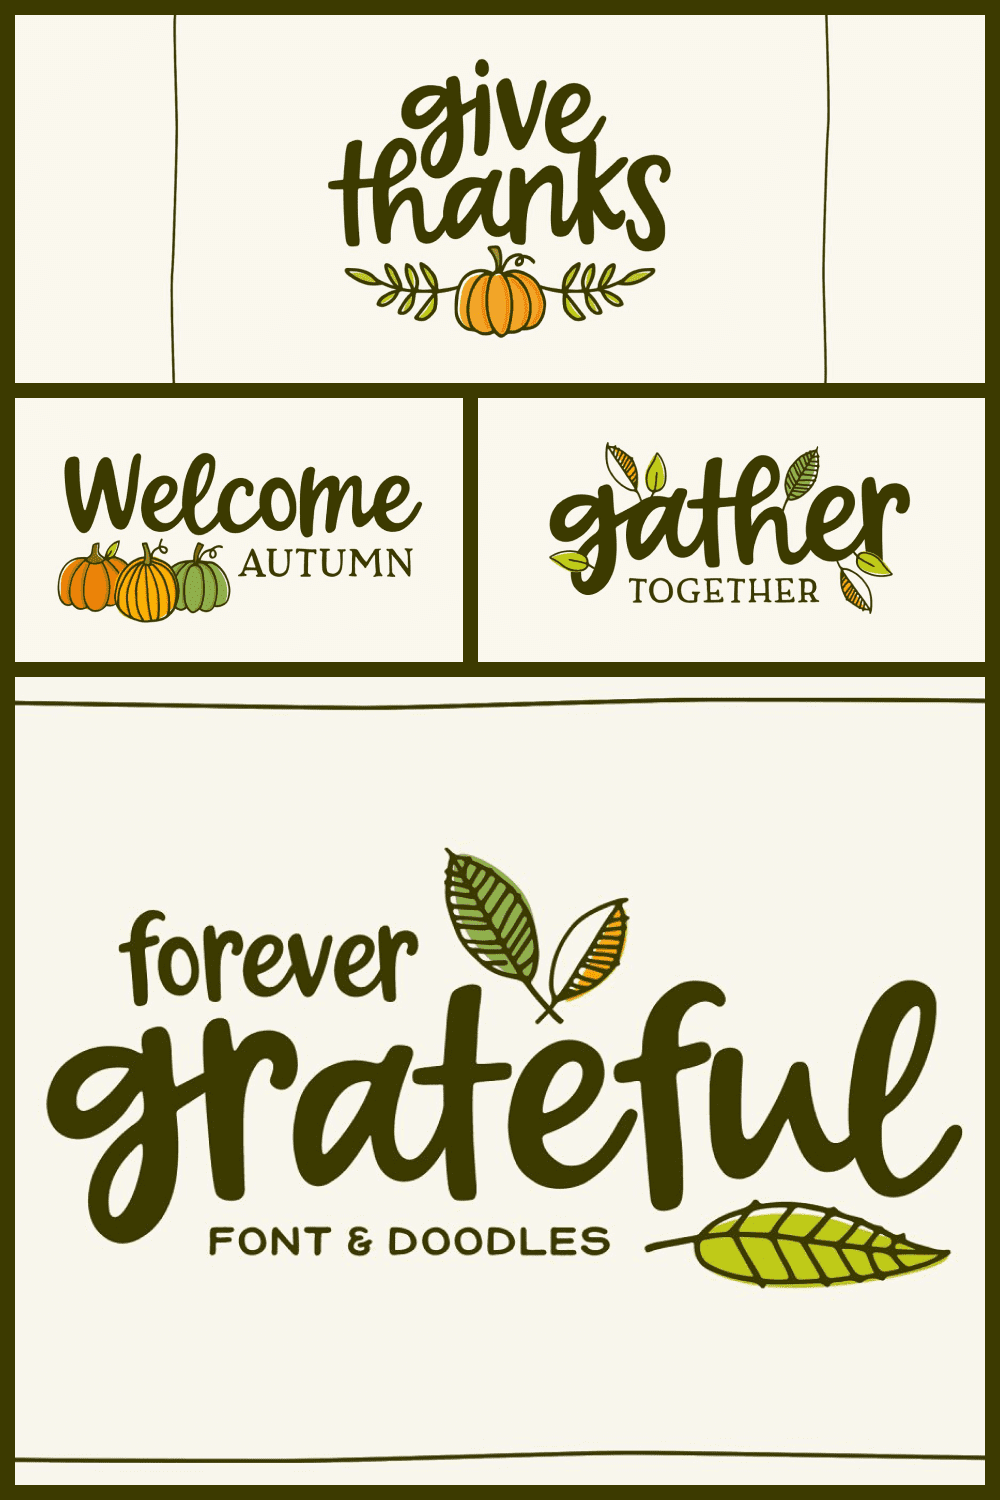 Forever grateful font doodles.